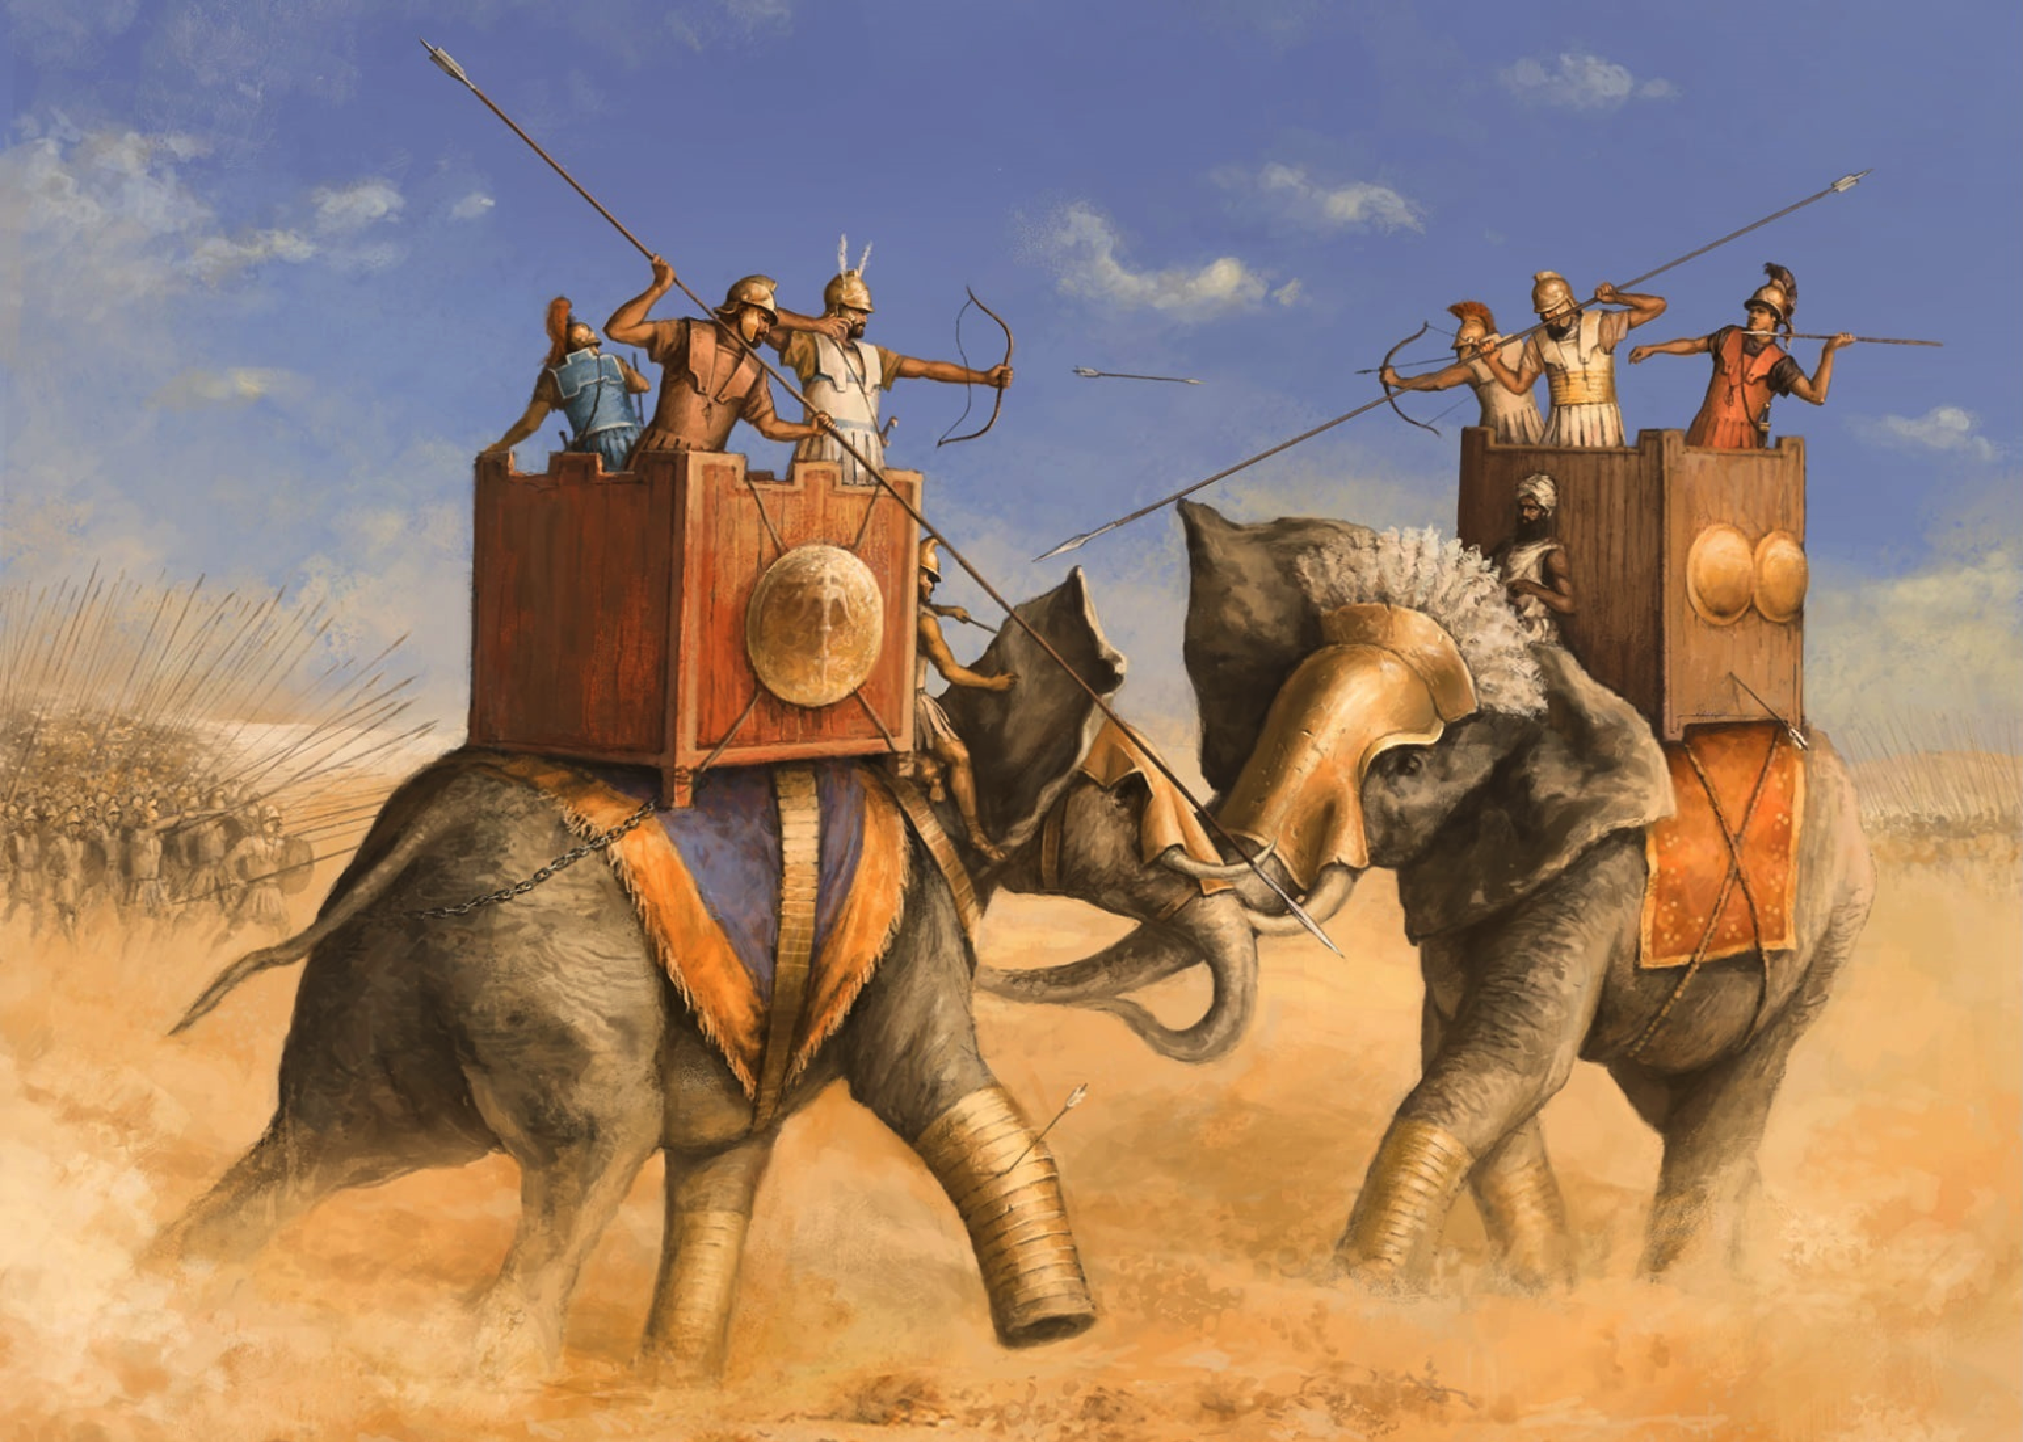 Batalla de Ipsos (301 AC) - Arre caballo!